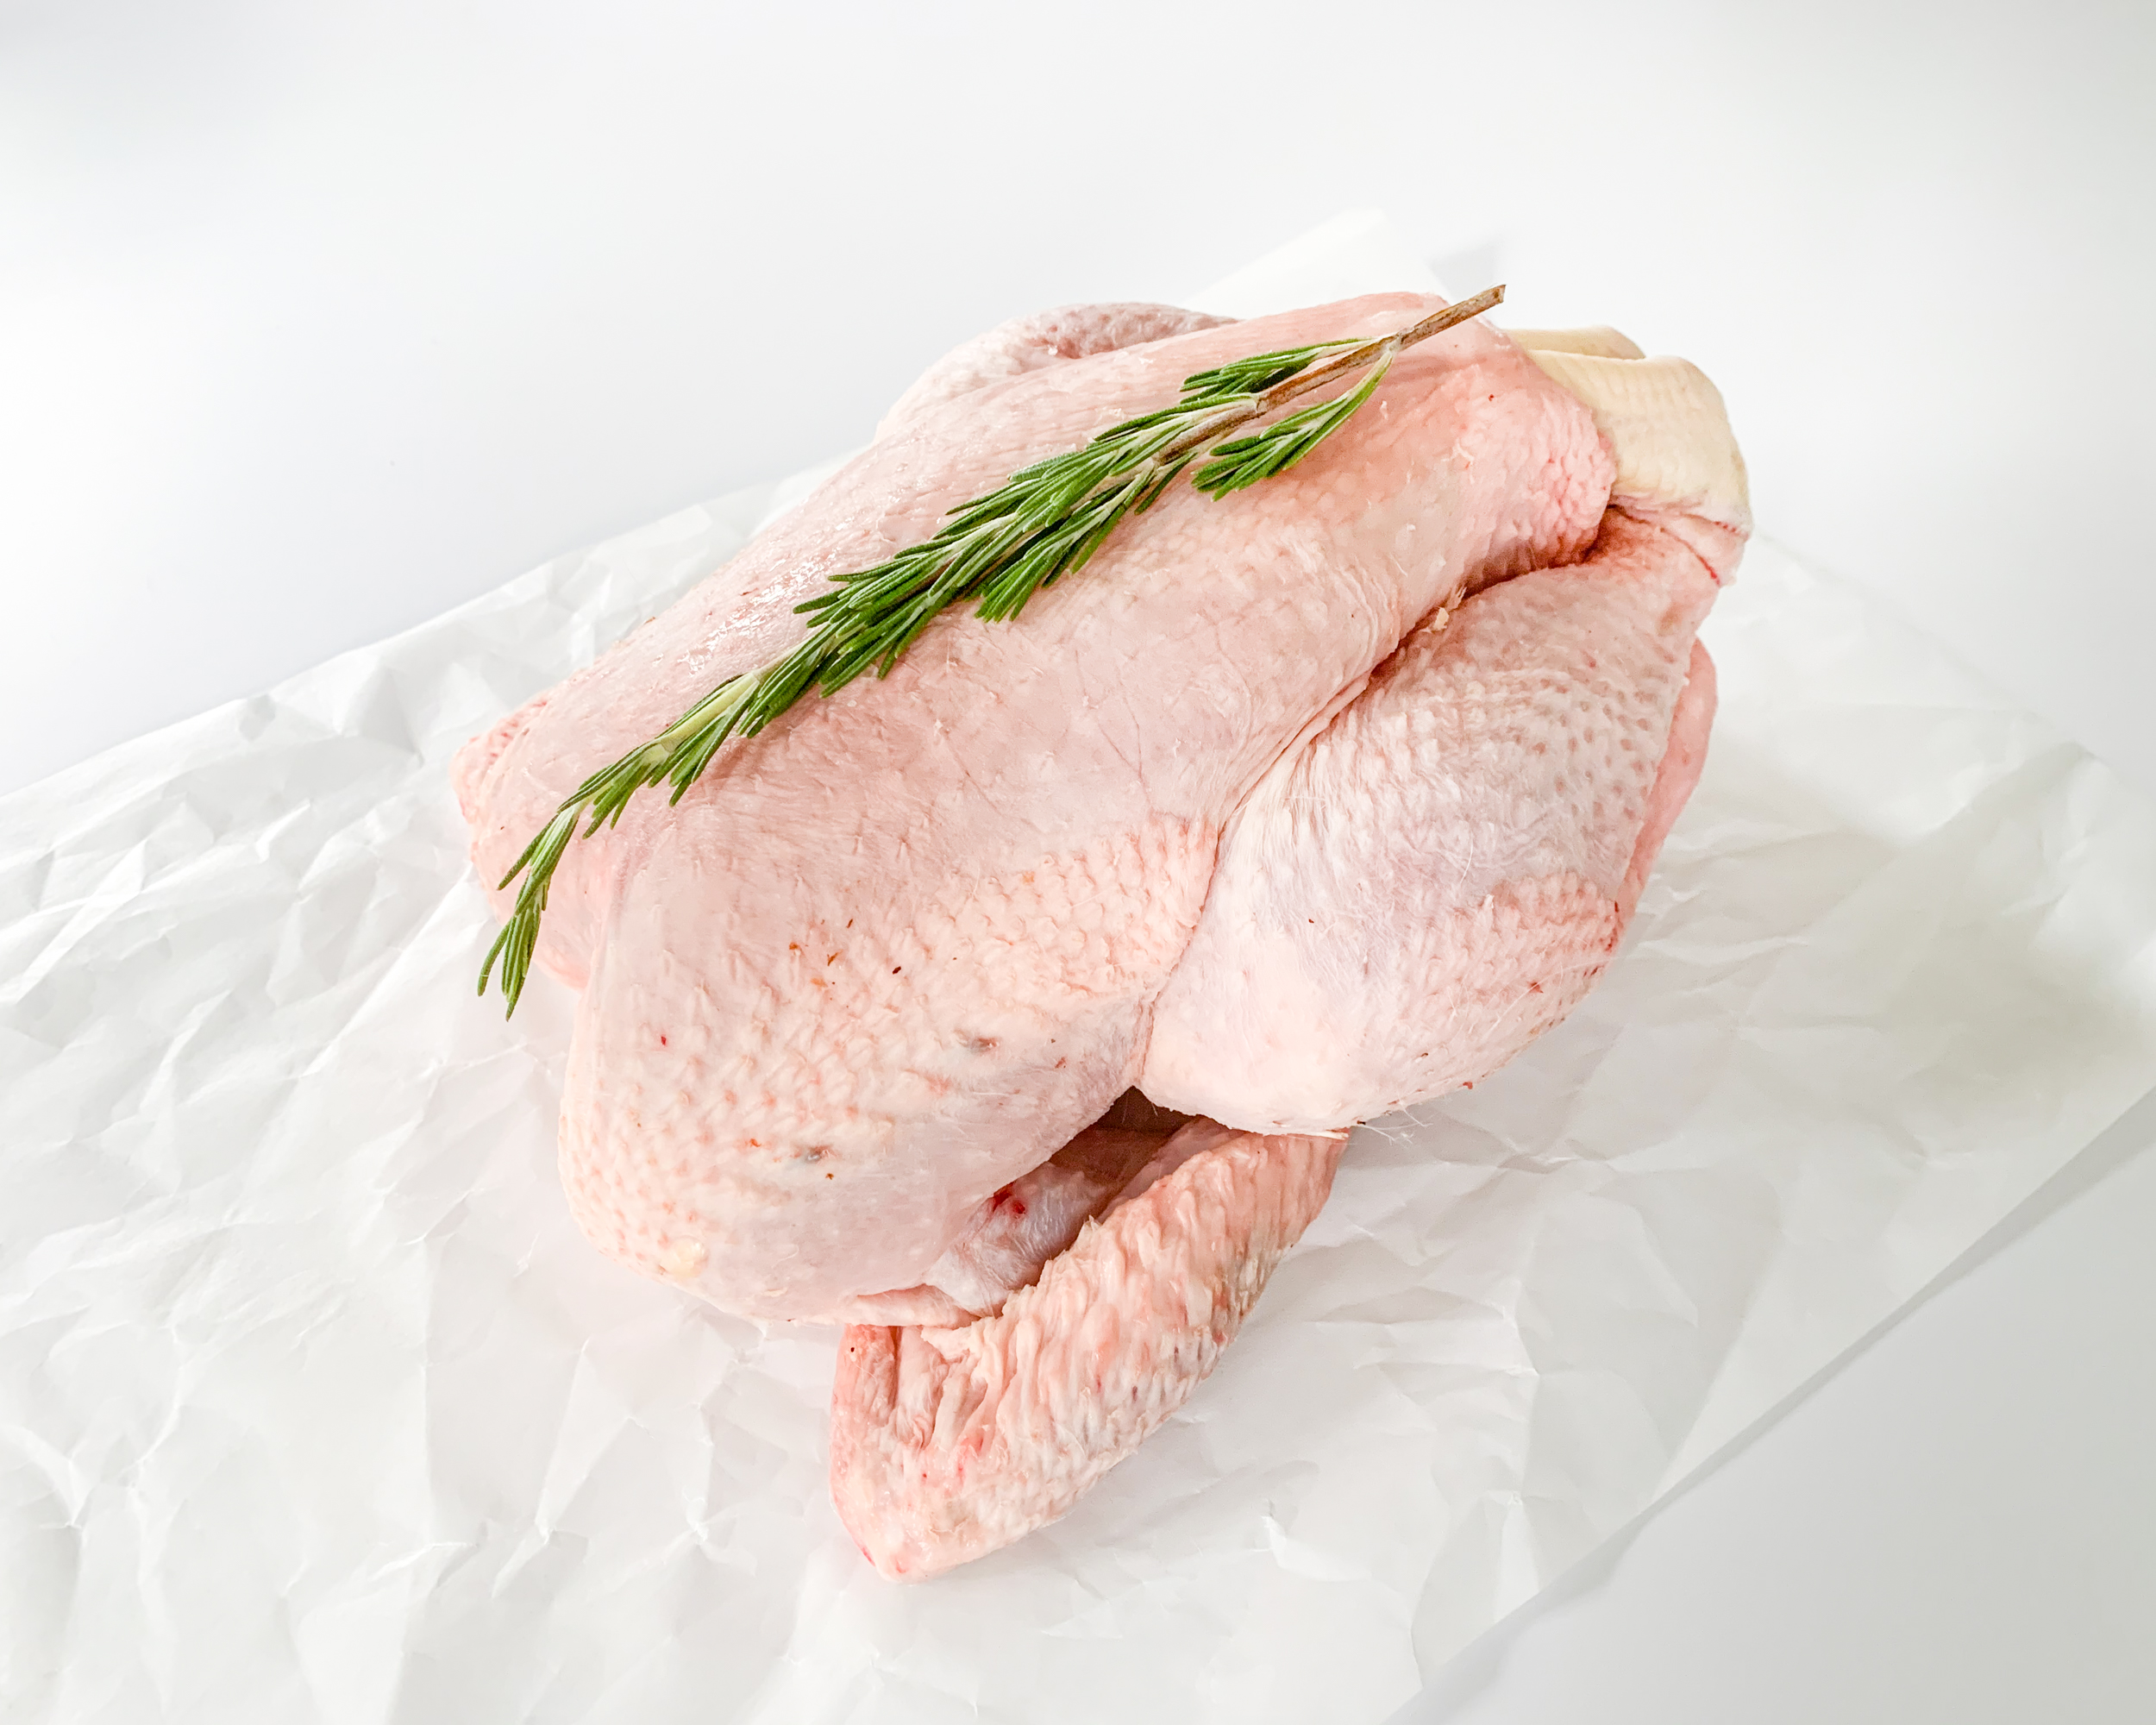 Sutton Hoo Free Range Chicken (2.2kg)